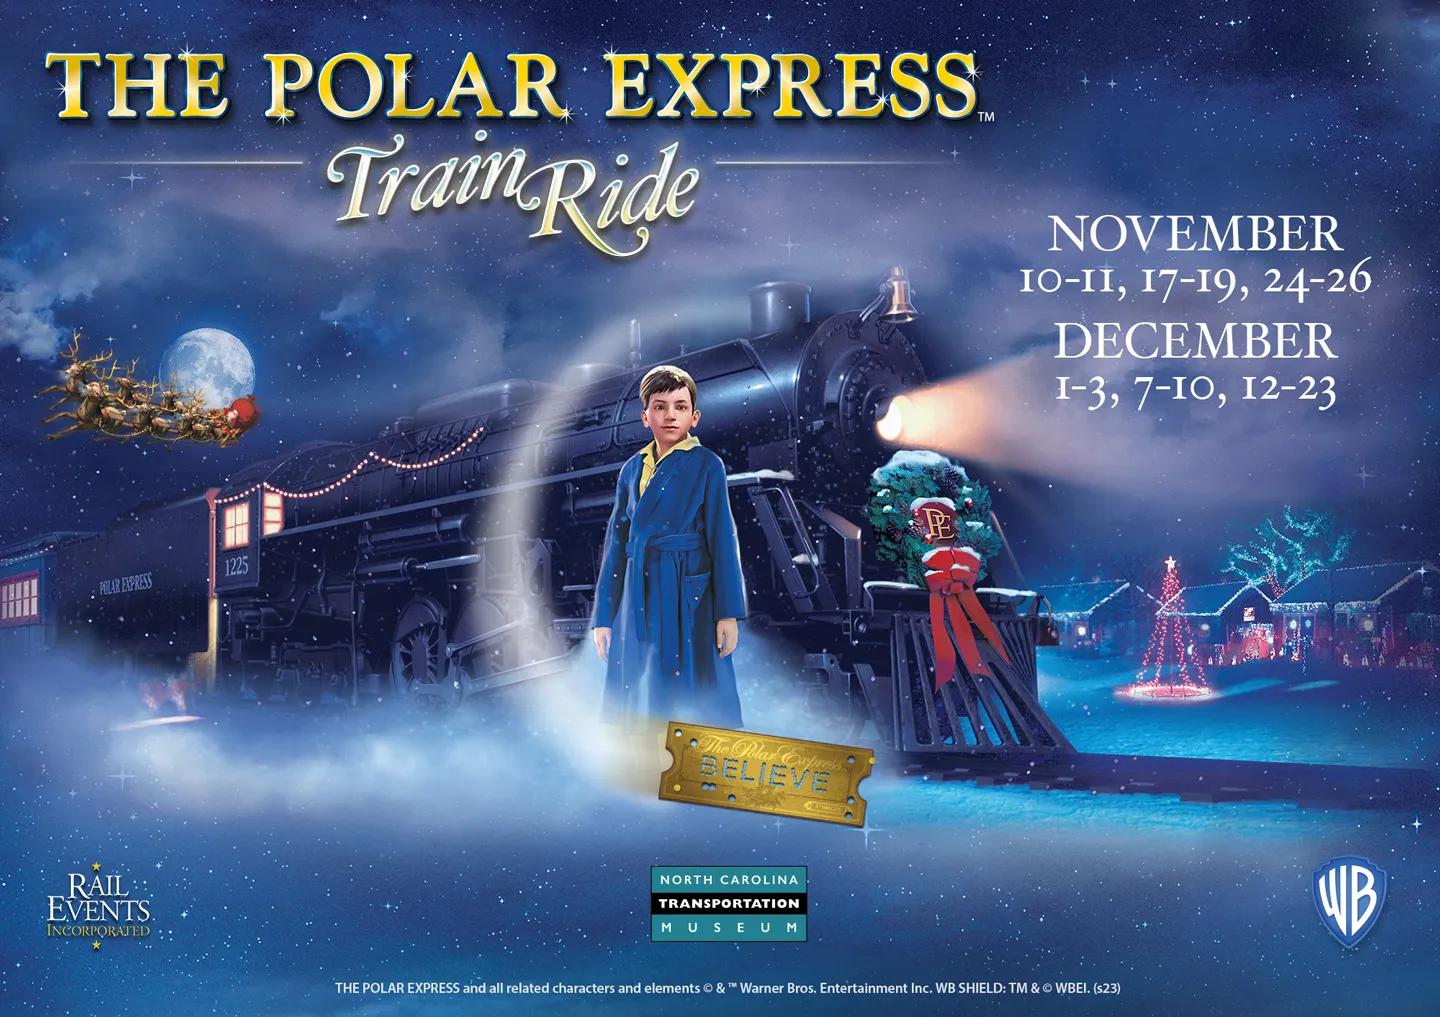 The Polar Express 2 Official Trailer 2021 